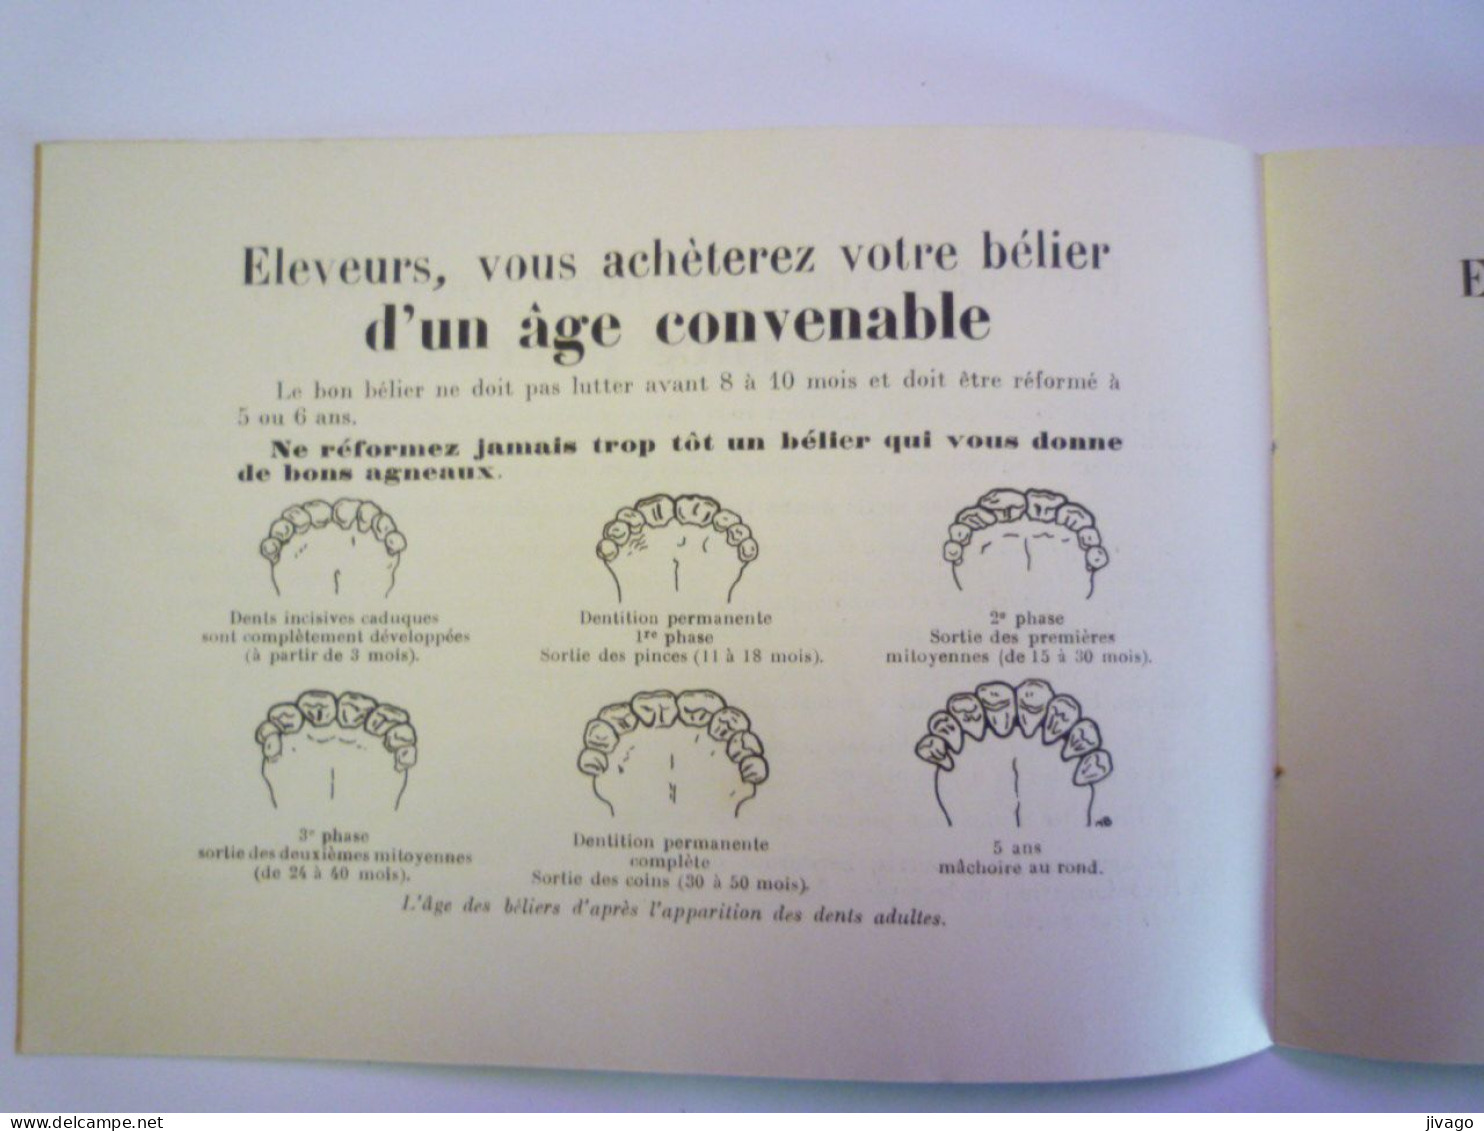 2024 - 1868  " LE CHOIX DU BELIER "  Petite brochure  PUB   (16 pages)   XXX